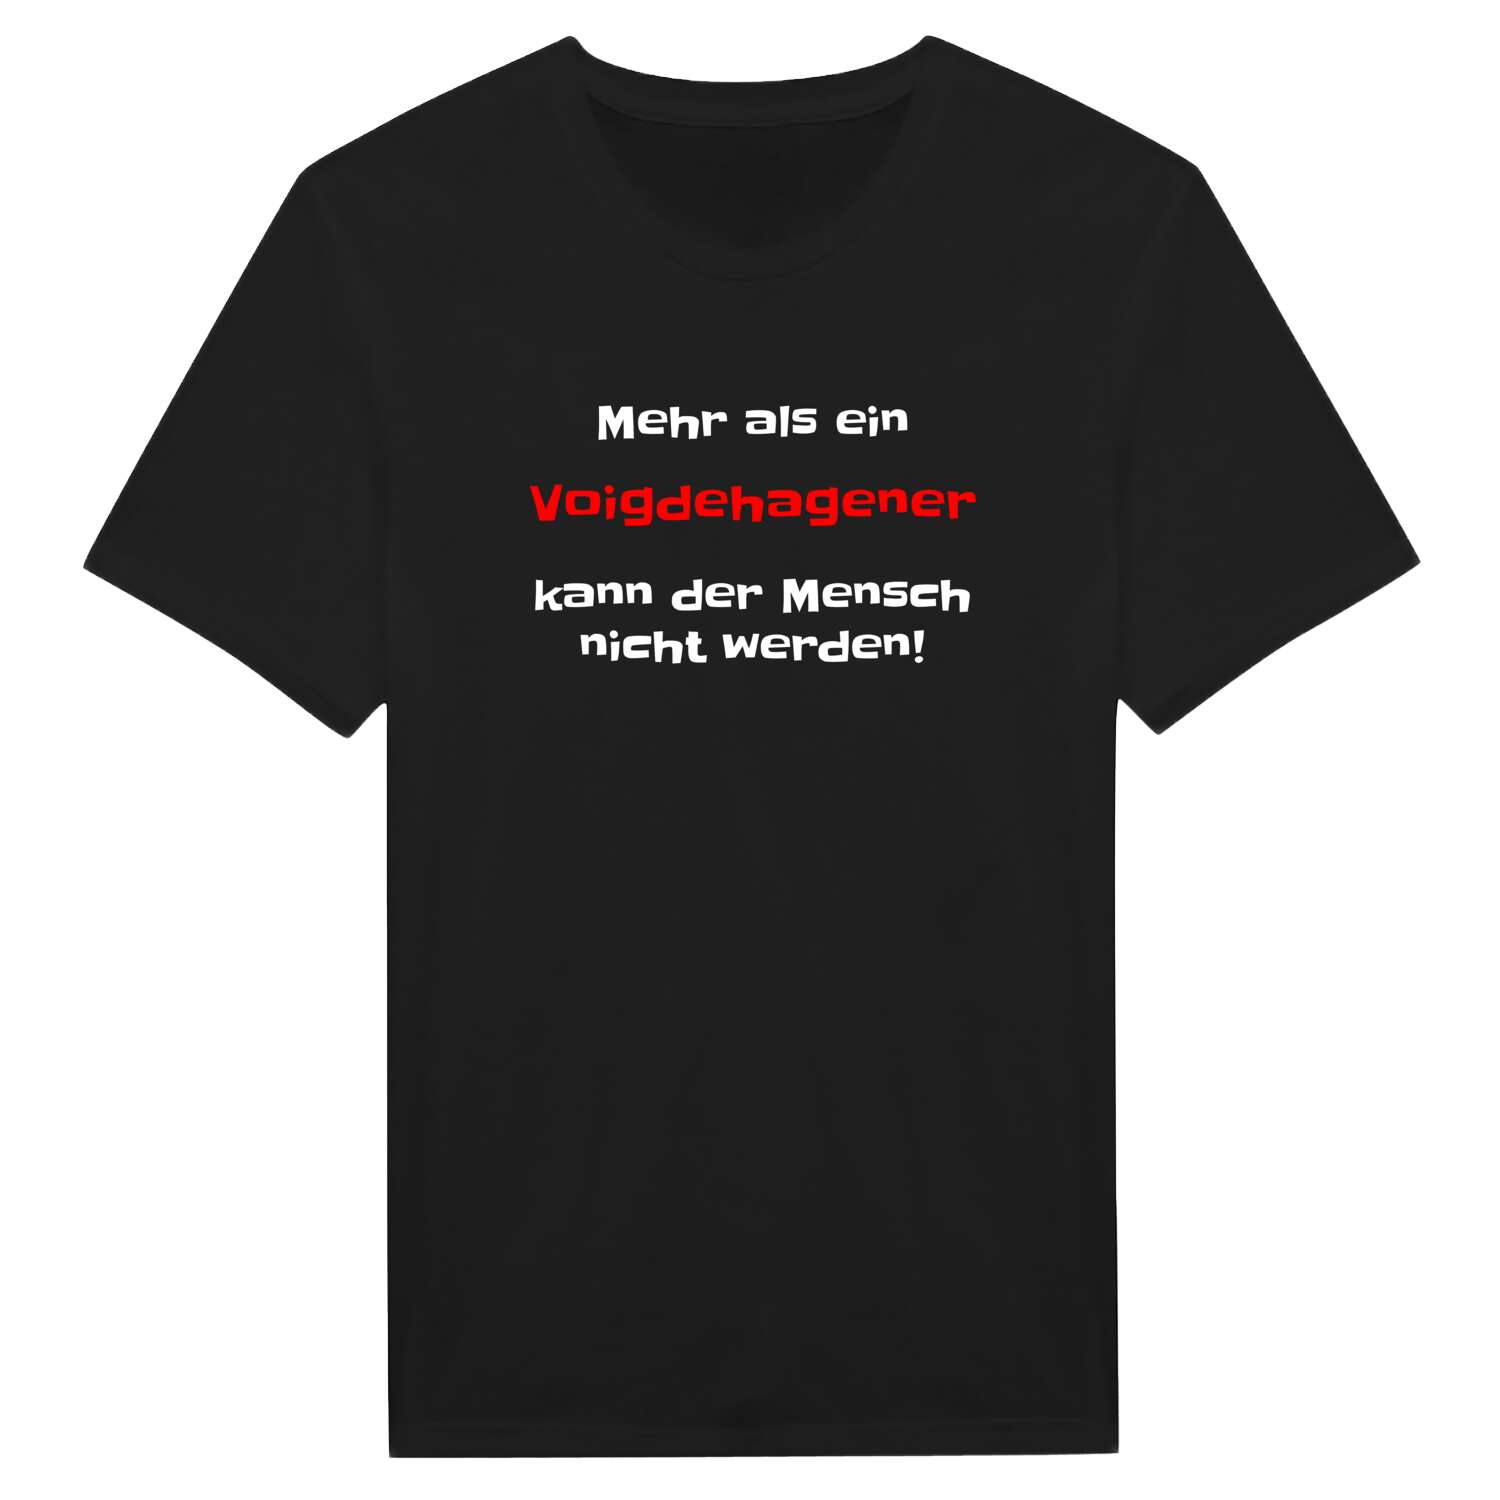 Voigdehagen T-Shirt »Mehr als ein«